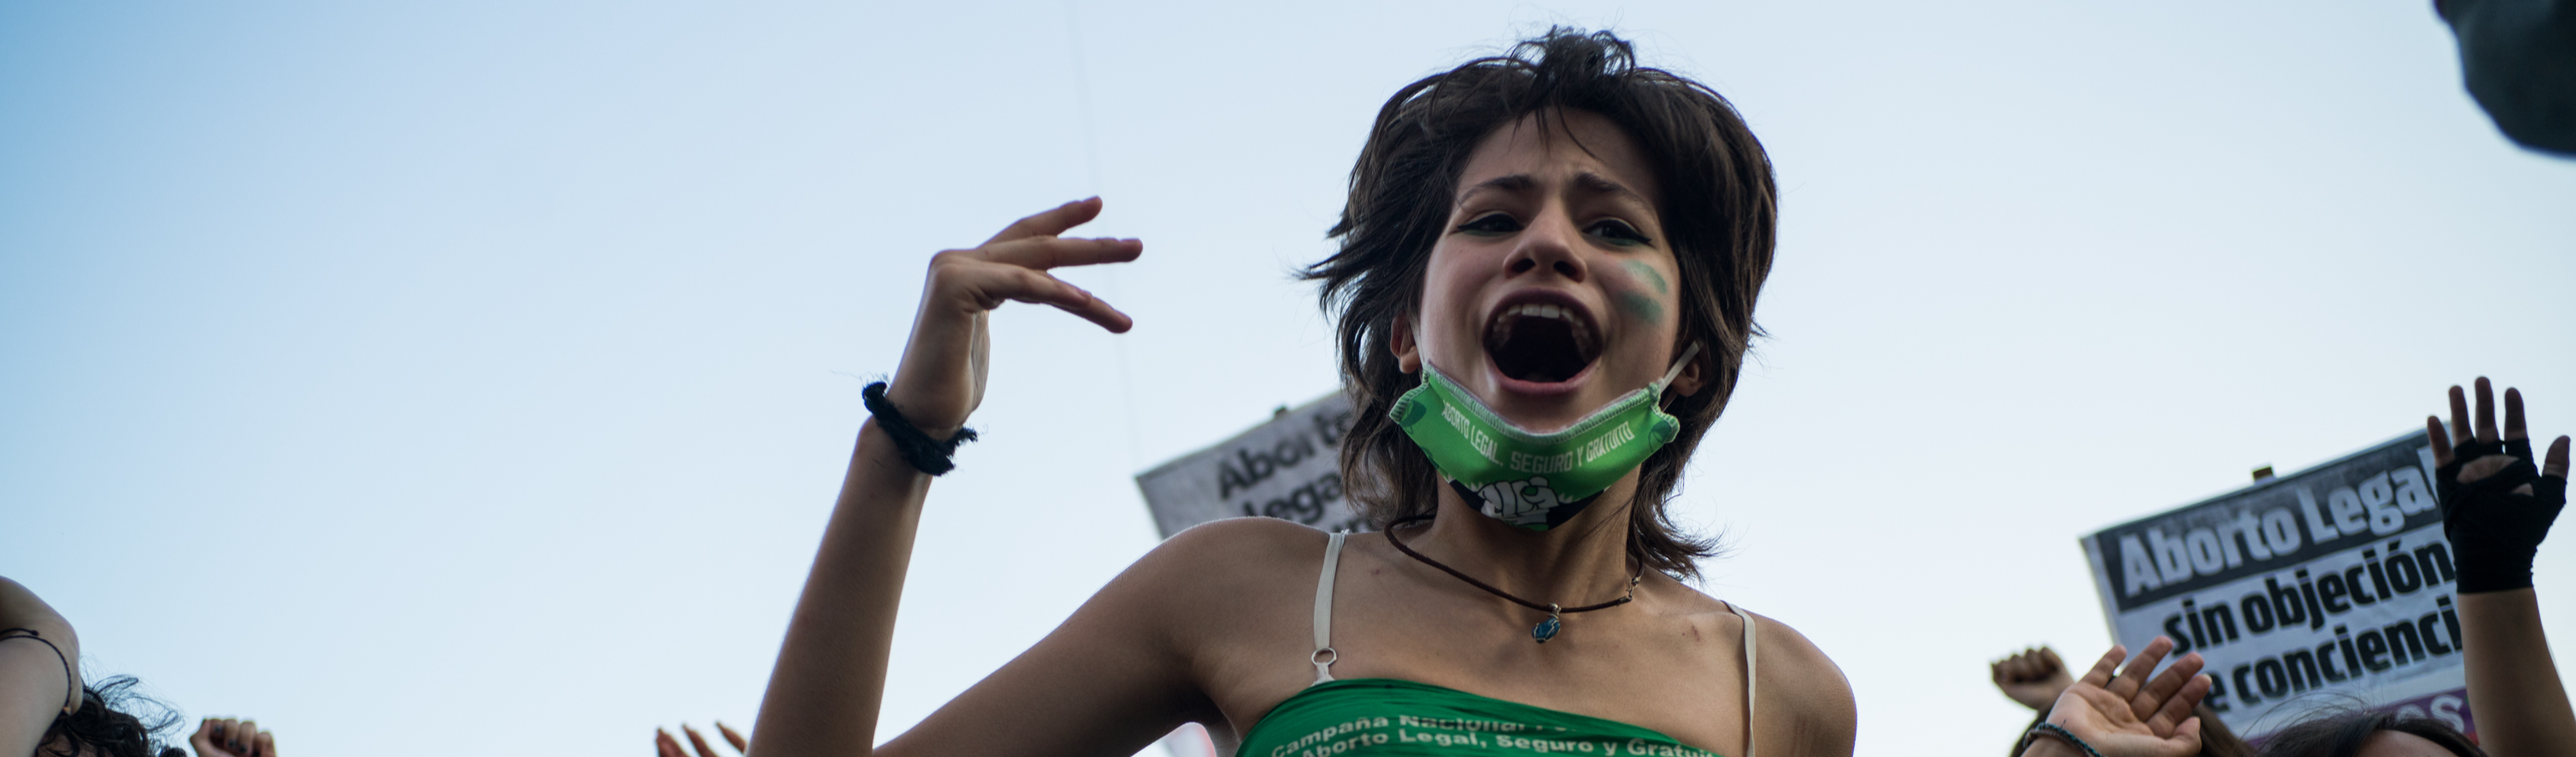 Pobres, jovens e indígenas: eis o perfil das penalizadas por aborto América Latina